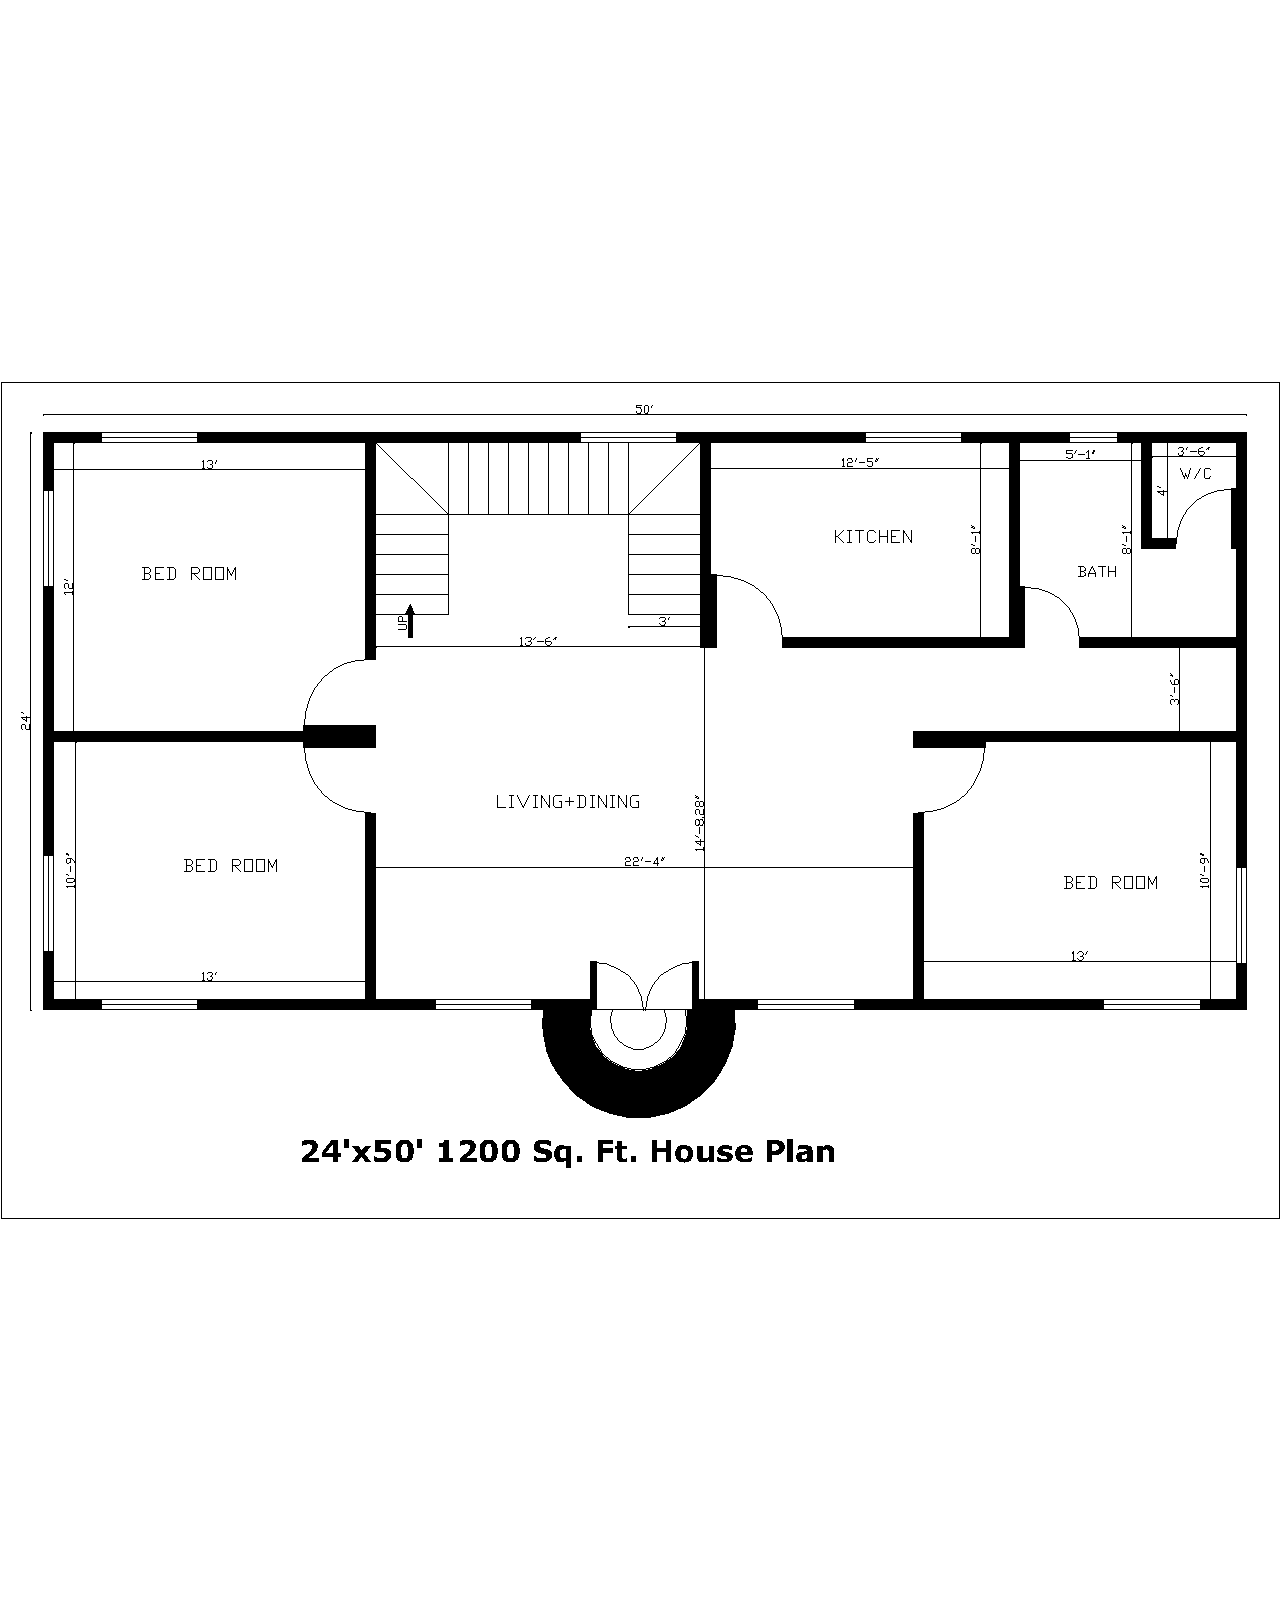 24'x50' 1200 Sq. Ft.House Plan